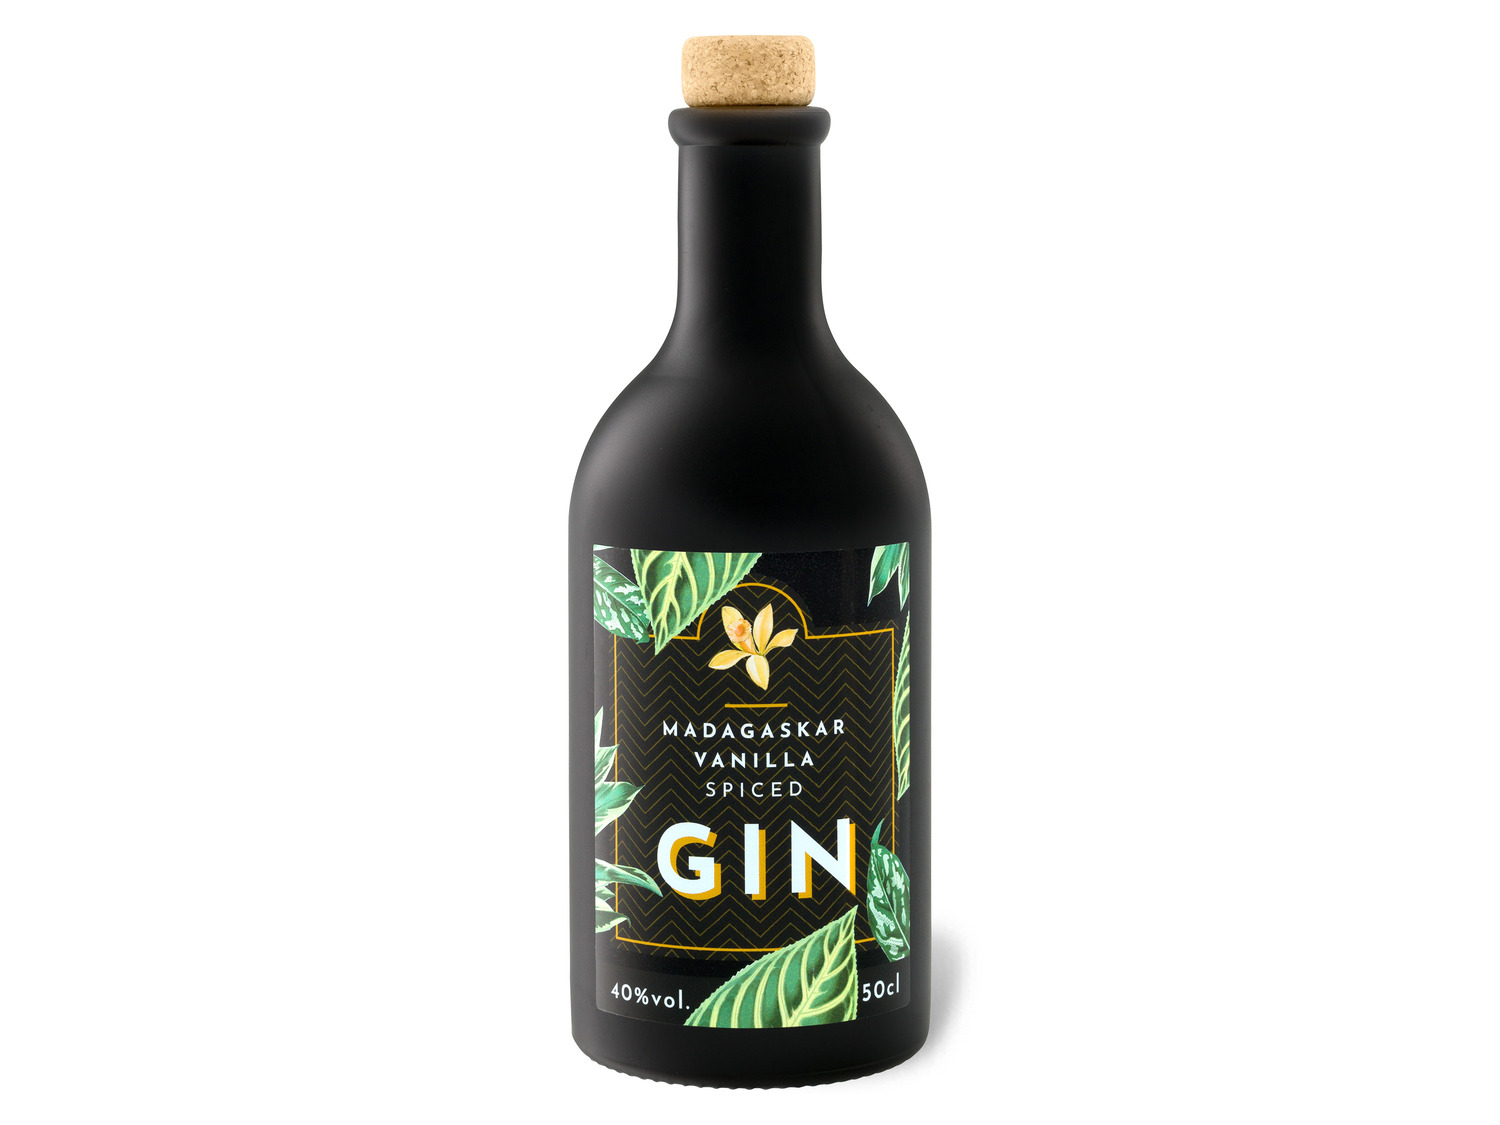 Madagascar Vanilla Spiced Gin 40% Vol | LIDL | Gin